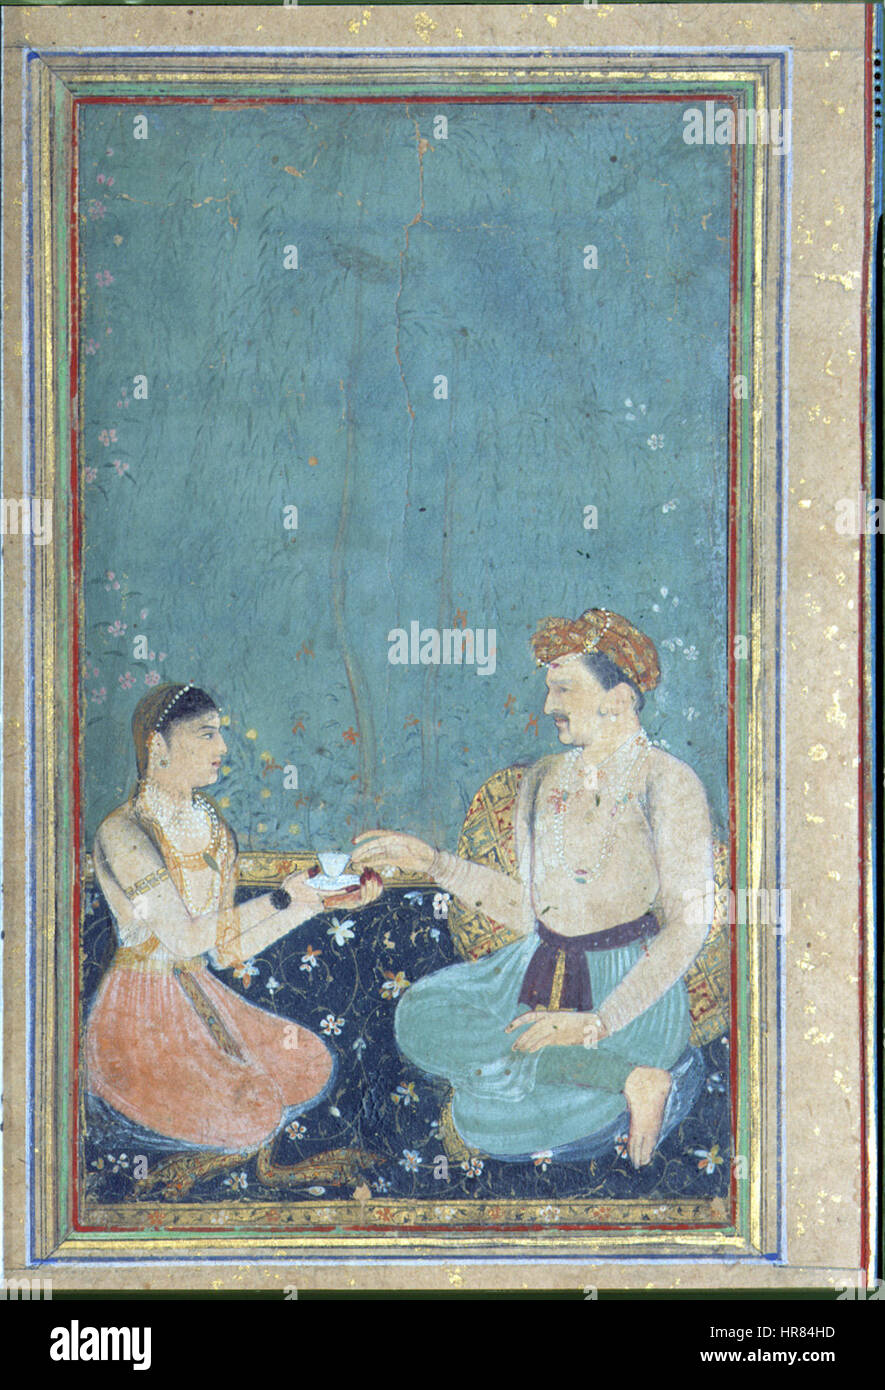 El emperador Jahangir toma una taza de una bandeja ofrecido por una joven (6125039010) Foto de stock